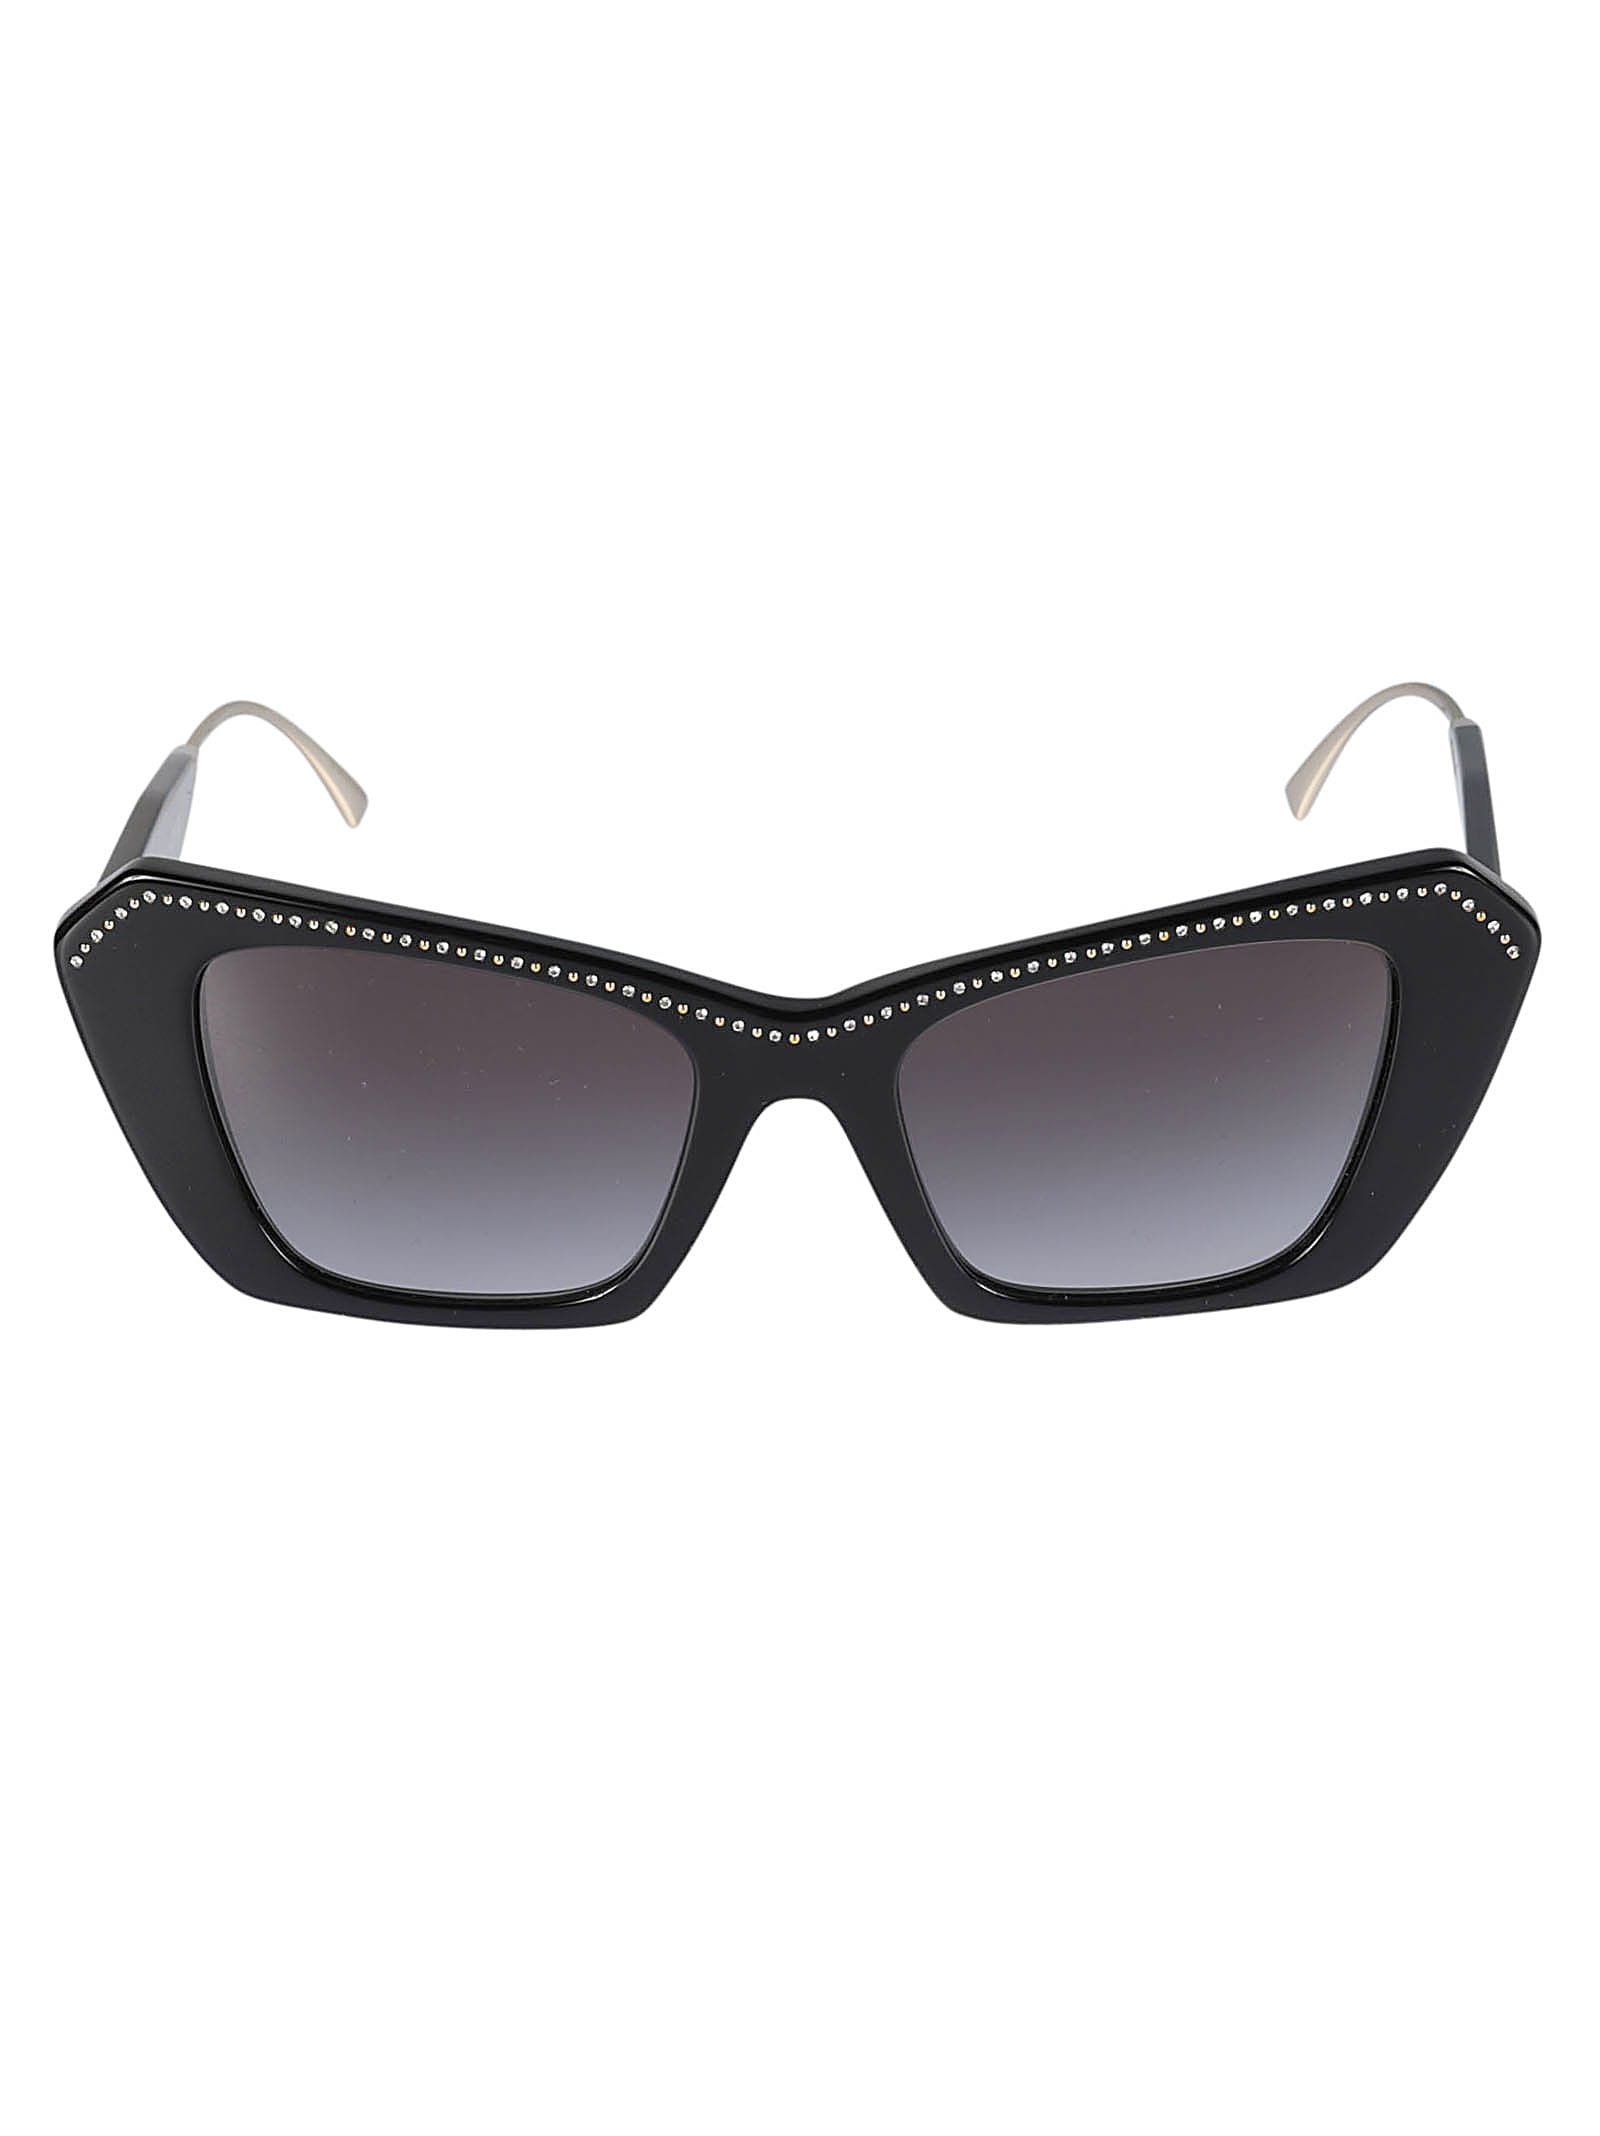 Valentino Sole50018g Sunglasses